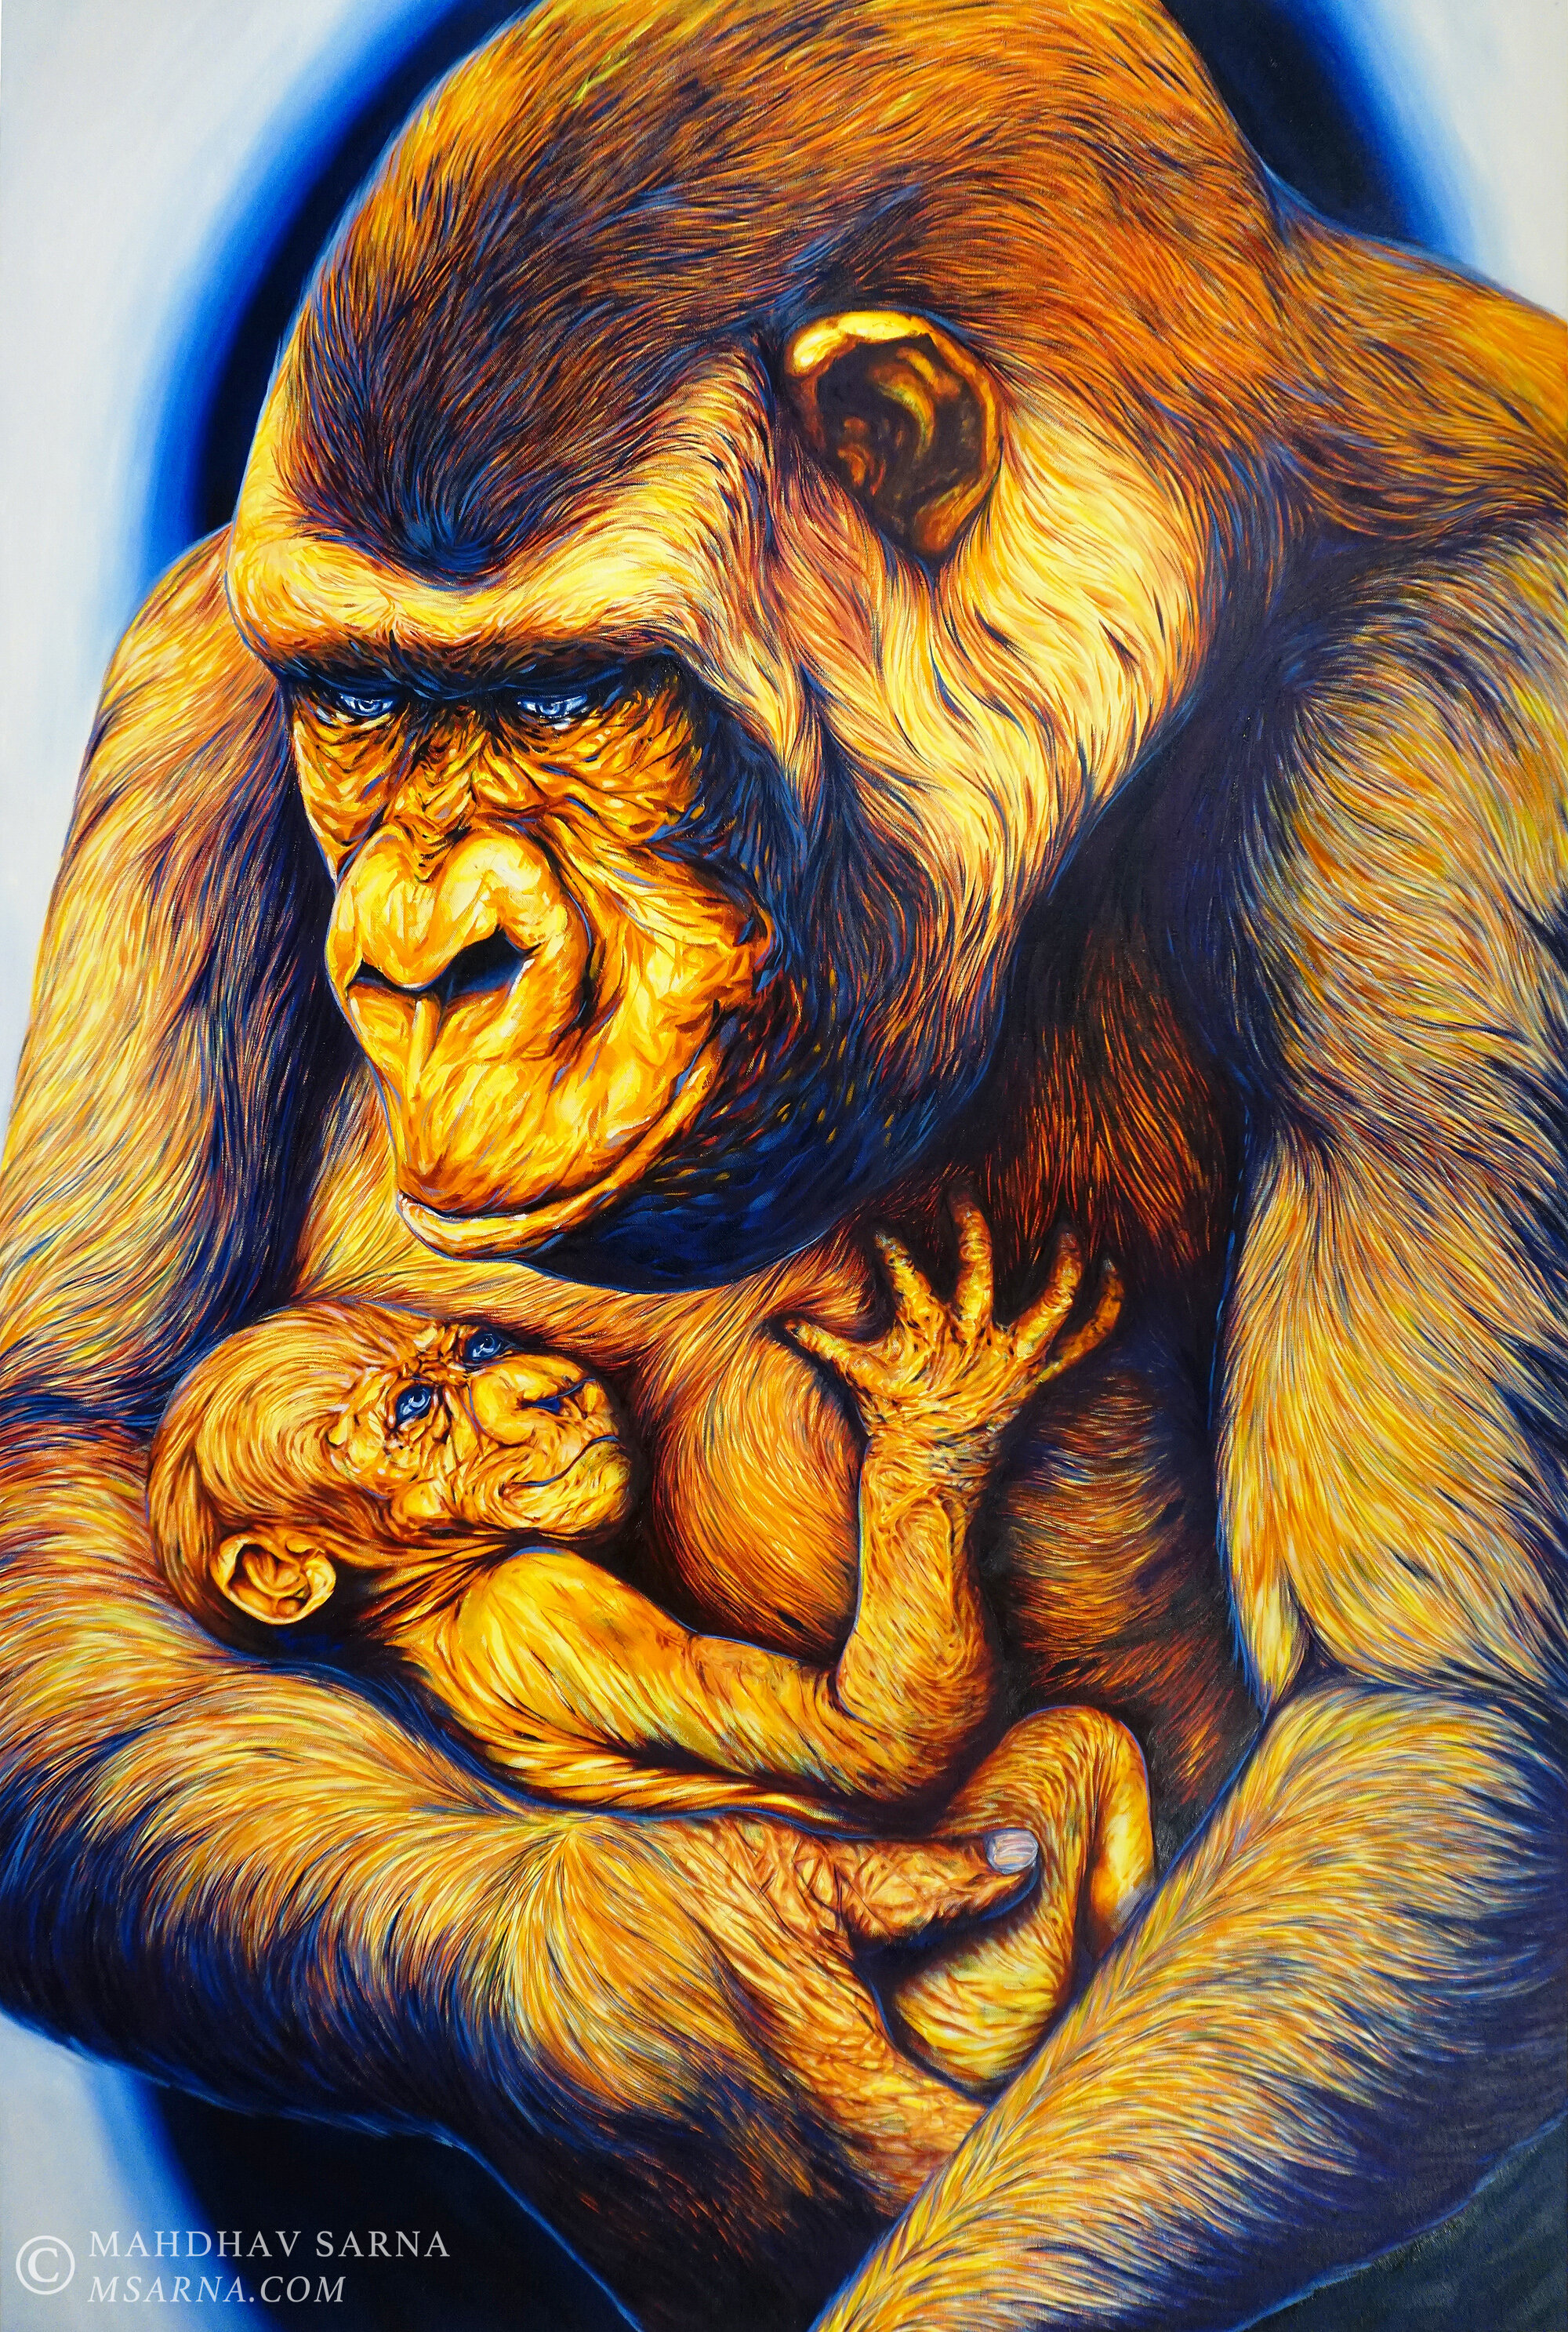 western lowland gorilla oil painting html wildlife art mahdhav sarna 01.jpg